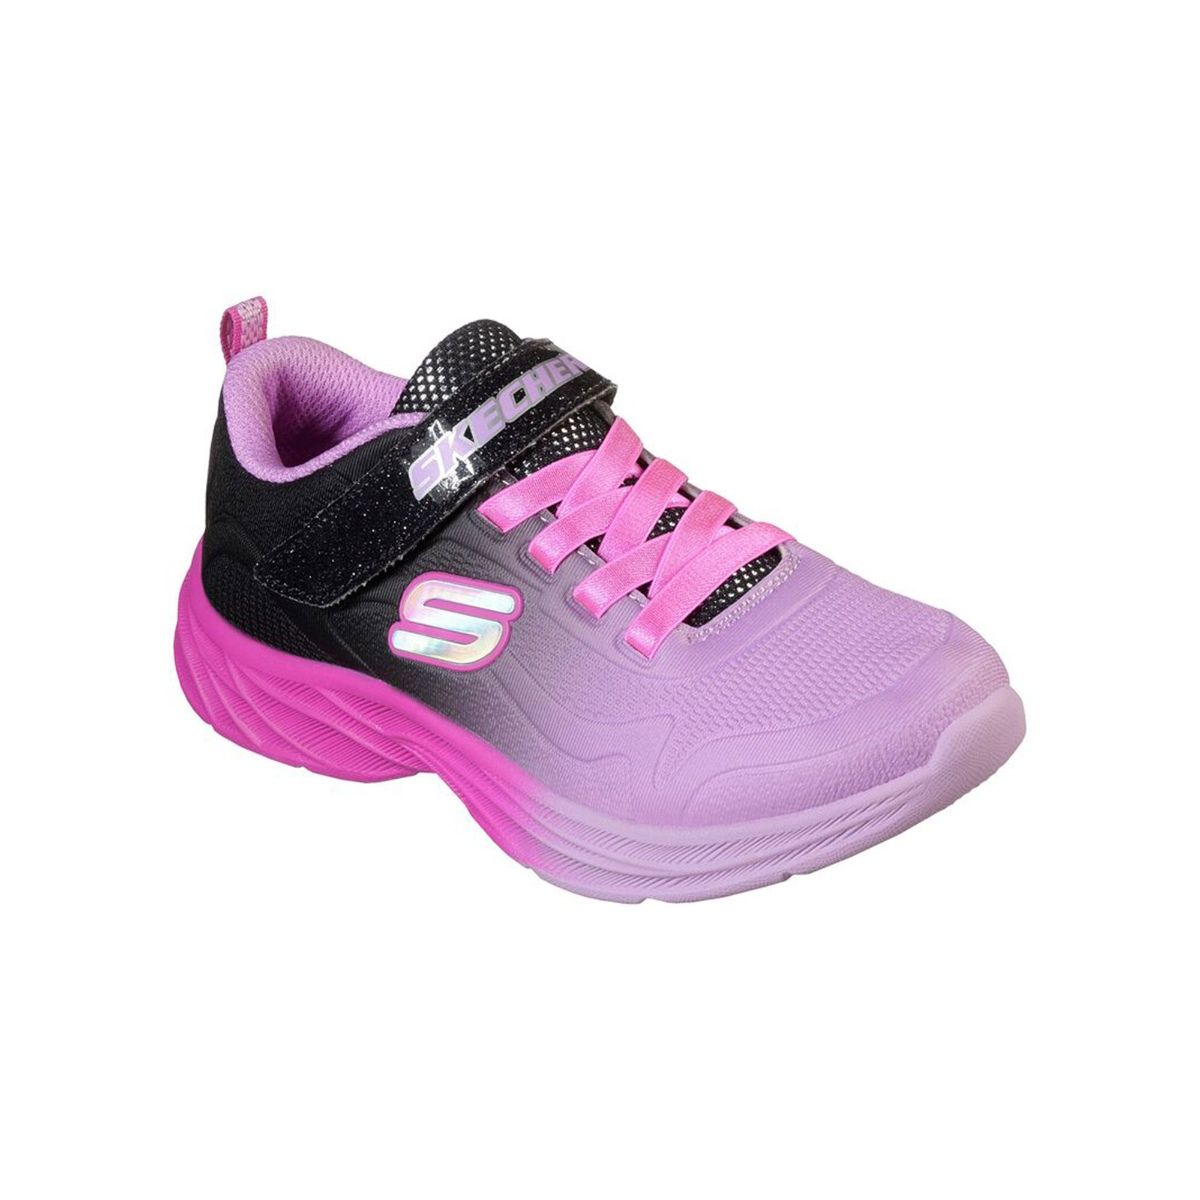 Buy Skechers Men GOrun Balance 2 Tech Running Shoes at Amazon.in